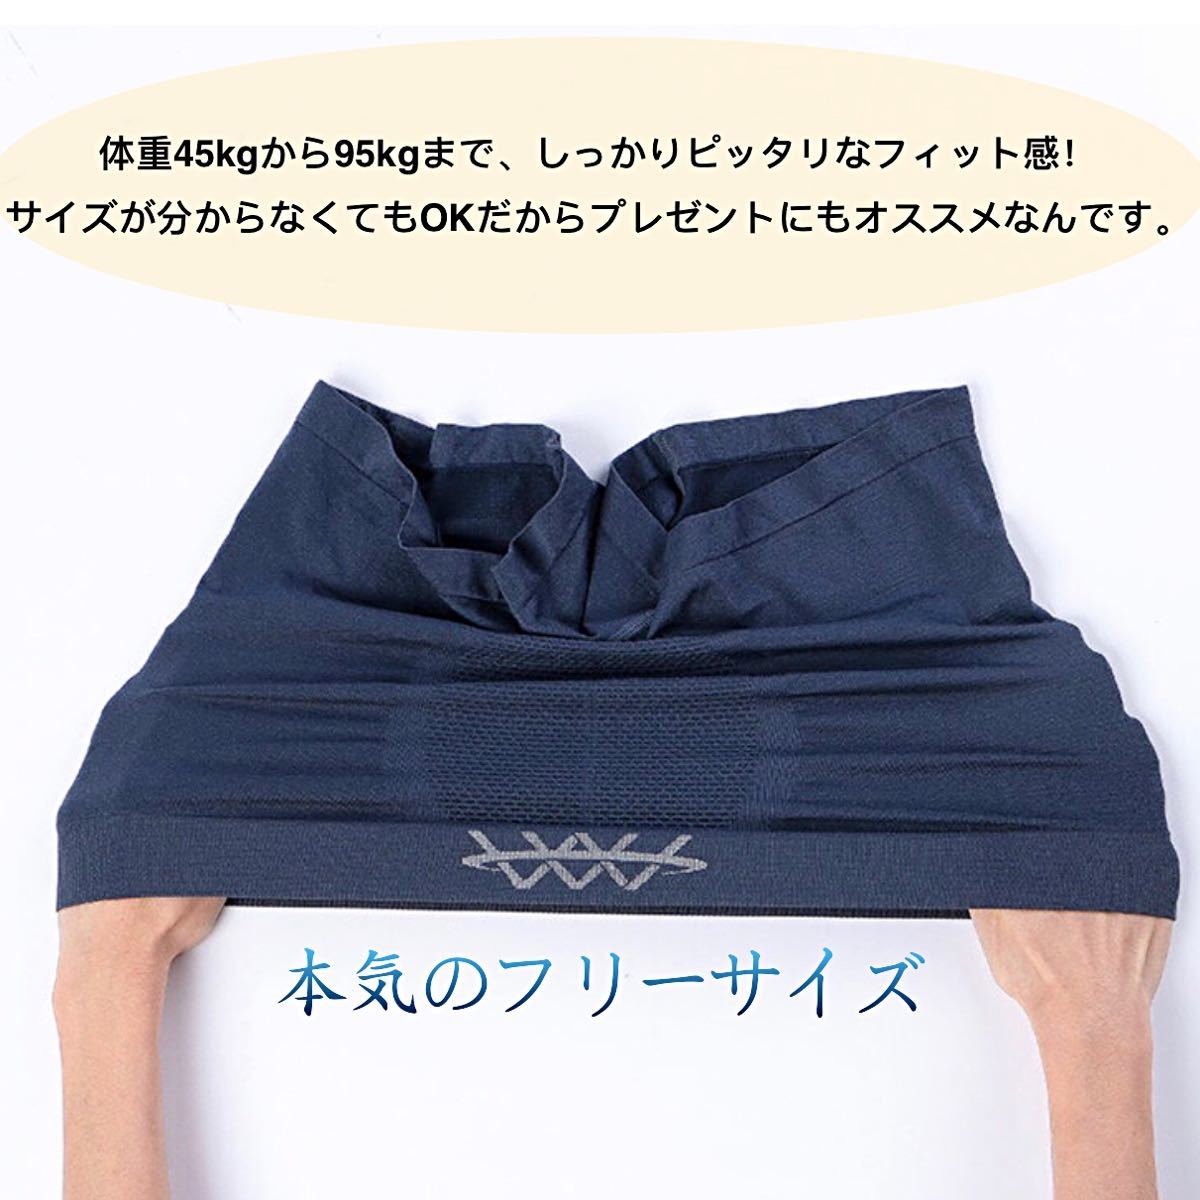 ボクサーパンツ メンズショーツ 3枚セット 磁気パンツ  男性機能性下着 前閉じ シームレス